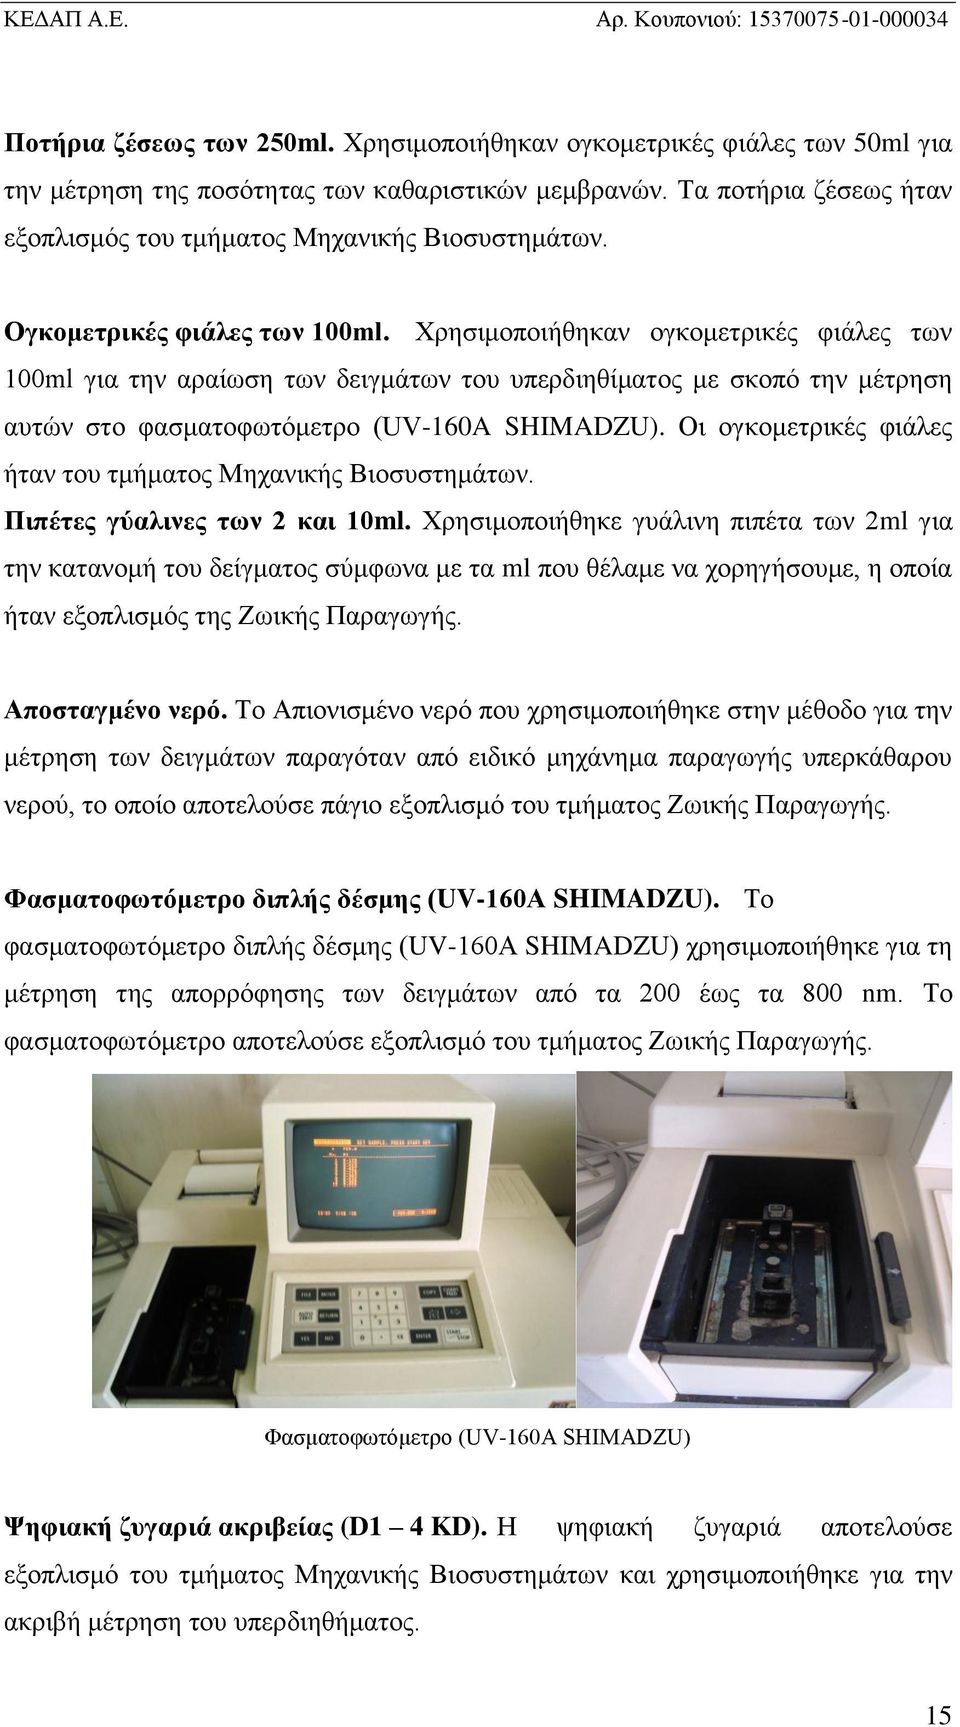 Χρησιμοποιήθηκαν ογκομετρικές φιάλες των 100ml για την αραίωση των δειγμάτων του υπερδιηθίματος με σκοπό την μέτρηση αυτών στο φασματοφωτόμετρο (UV-160A SHIMADZU).